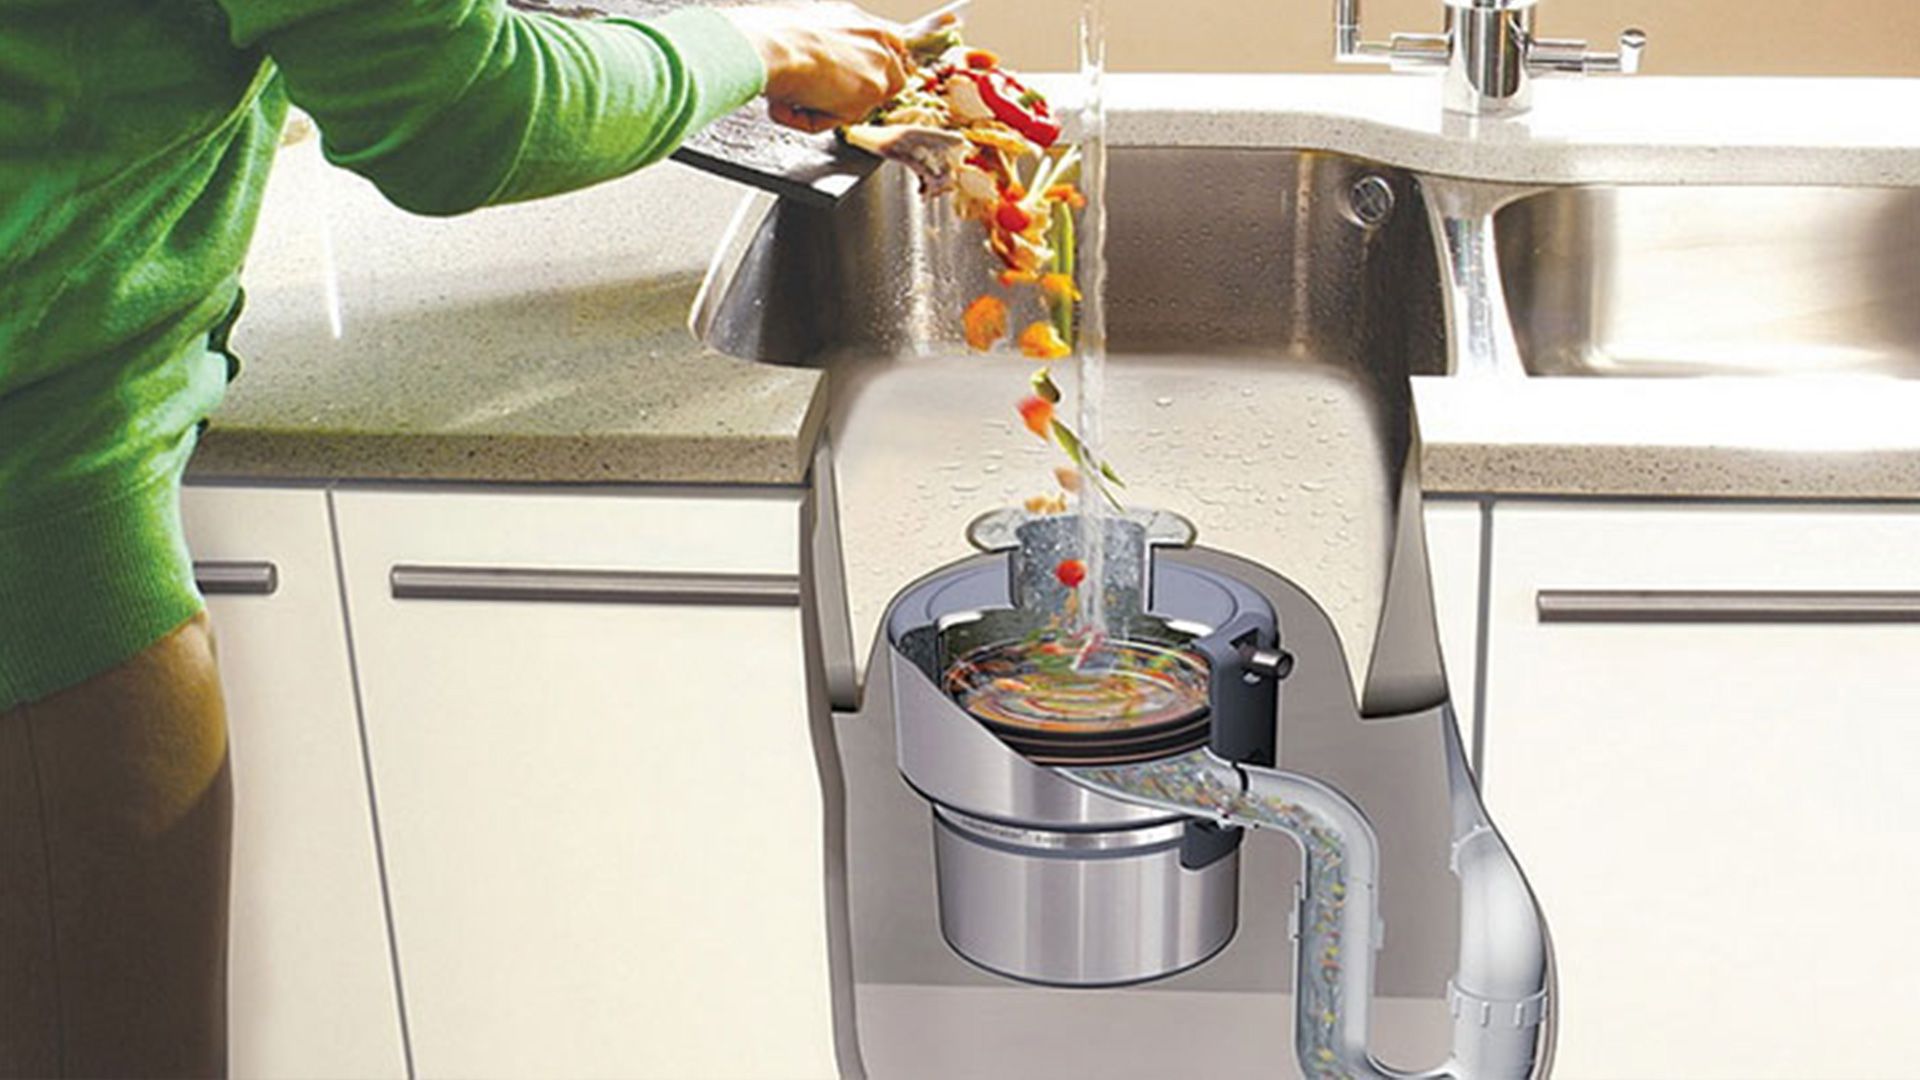 kitchen sink waste disposal unit